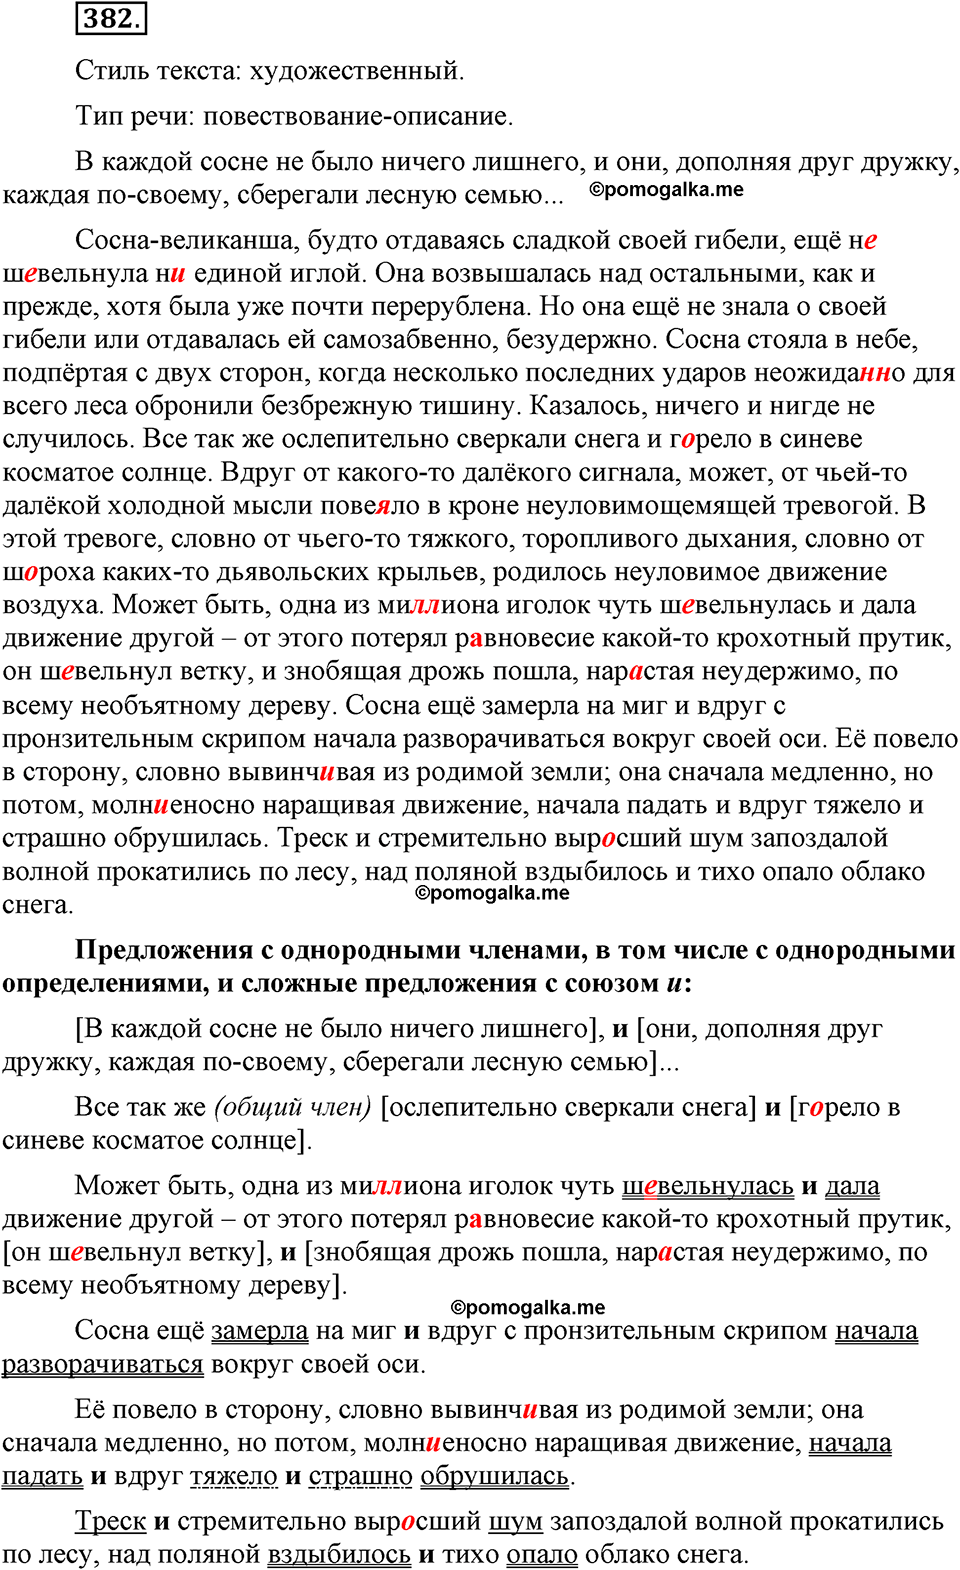 страница 171 номер 382 русский язык 9 класс Бархударов 2011 год